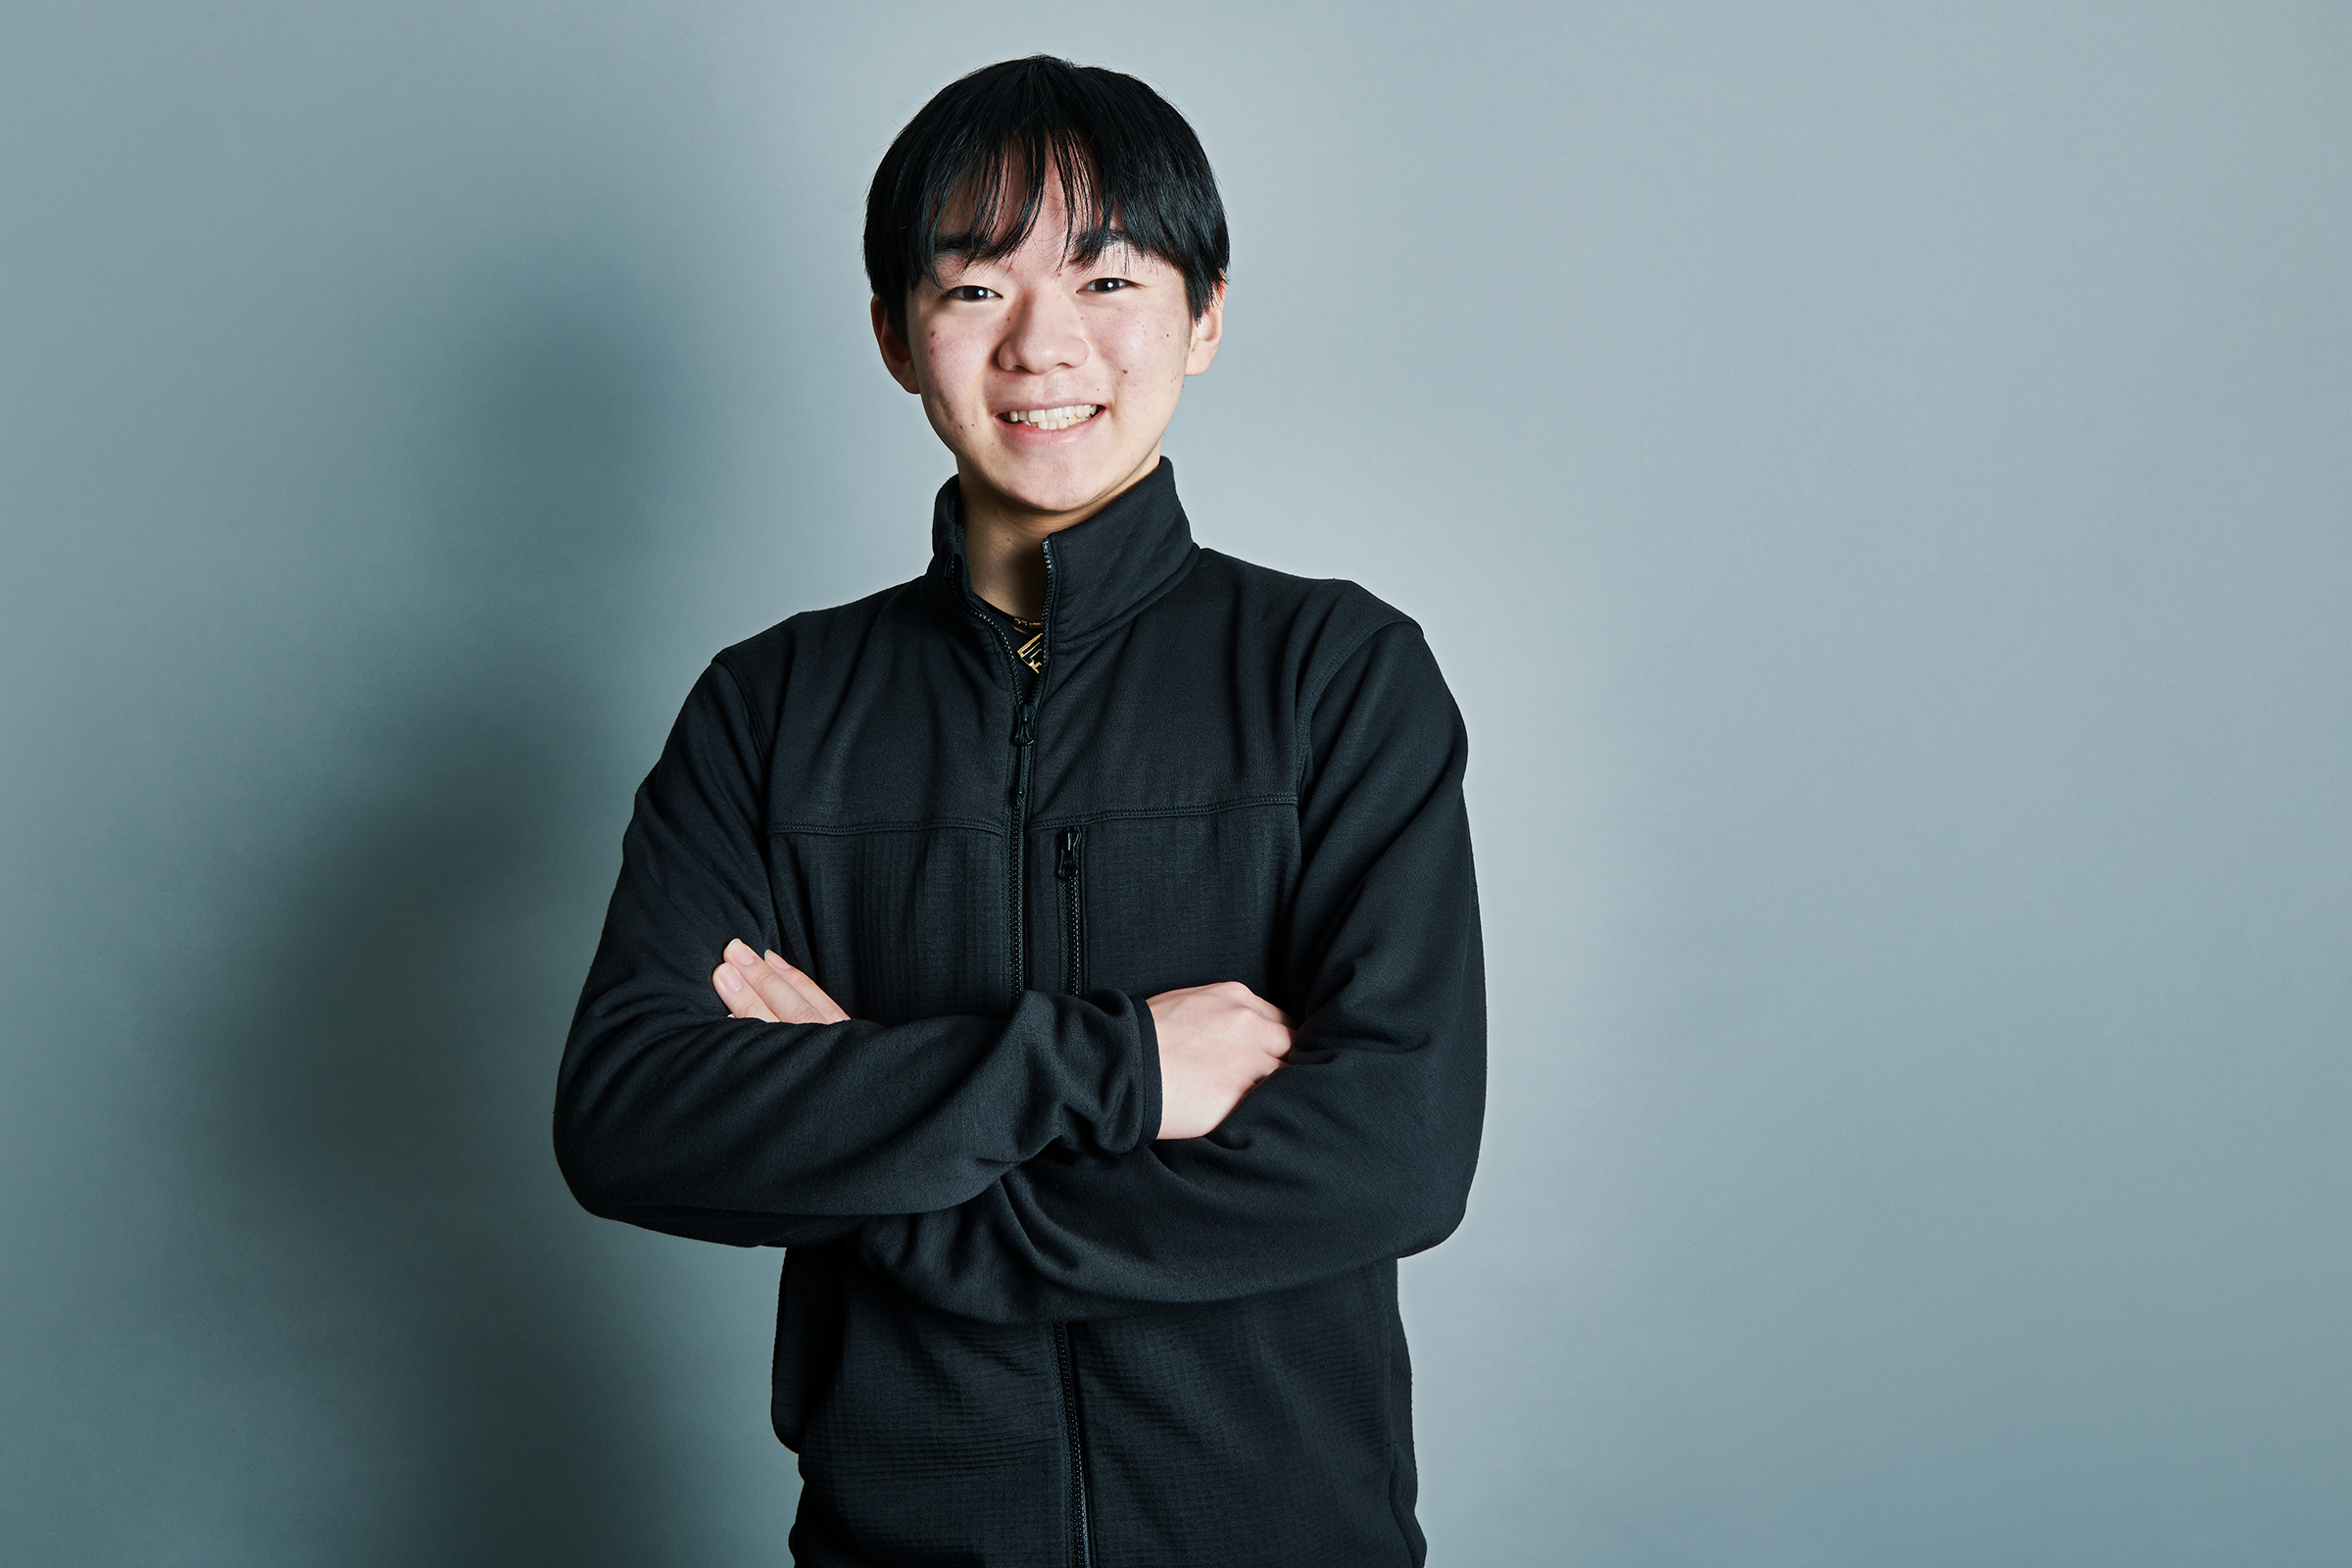 Yuma Kagiyama / 鍵山 優真 / Figure Skater , 2022 Olympic Silver Medalist / YAHOO! JAPAN News  